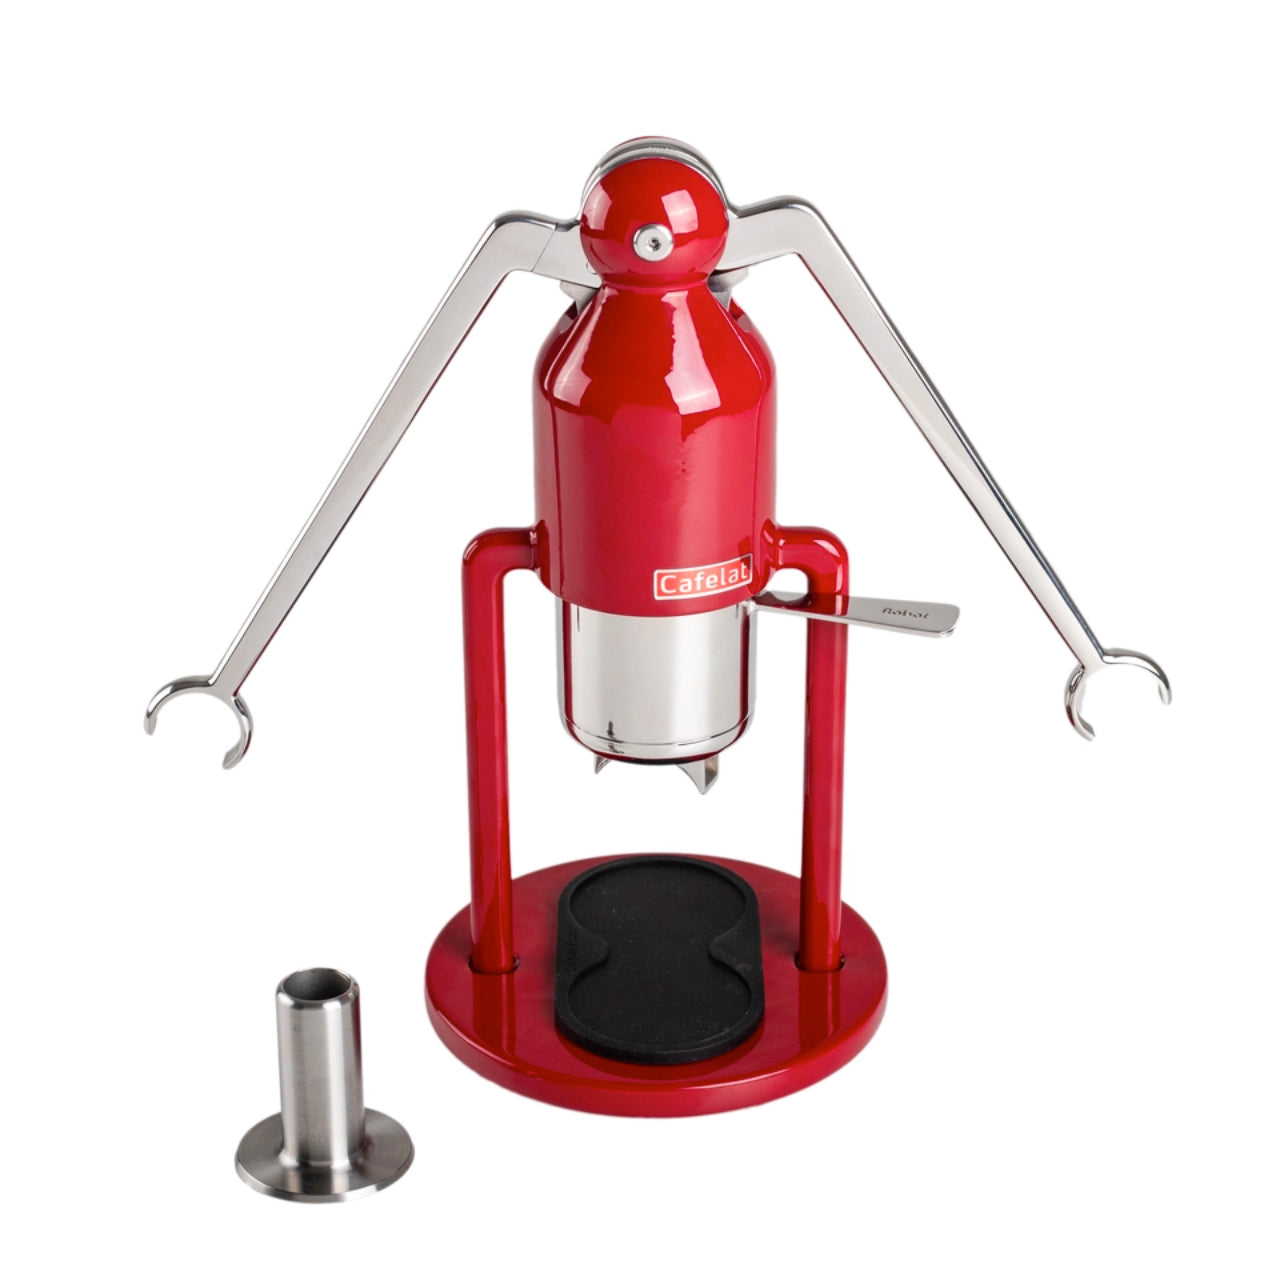 Cafelat Robot Espresso Maker, Red